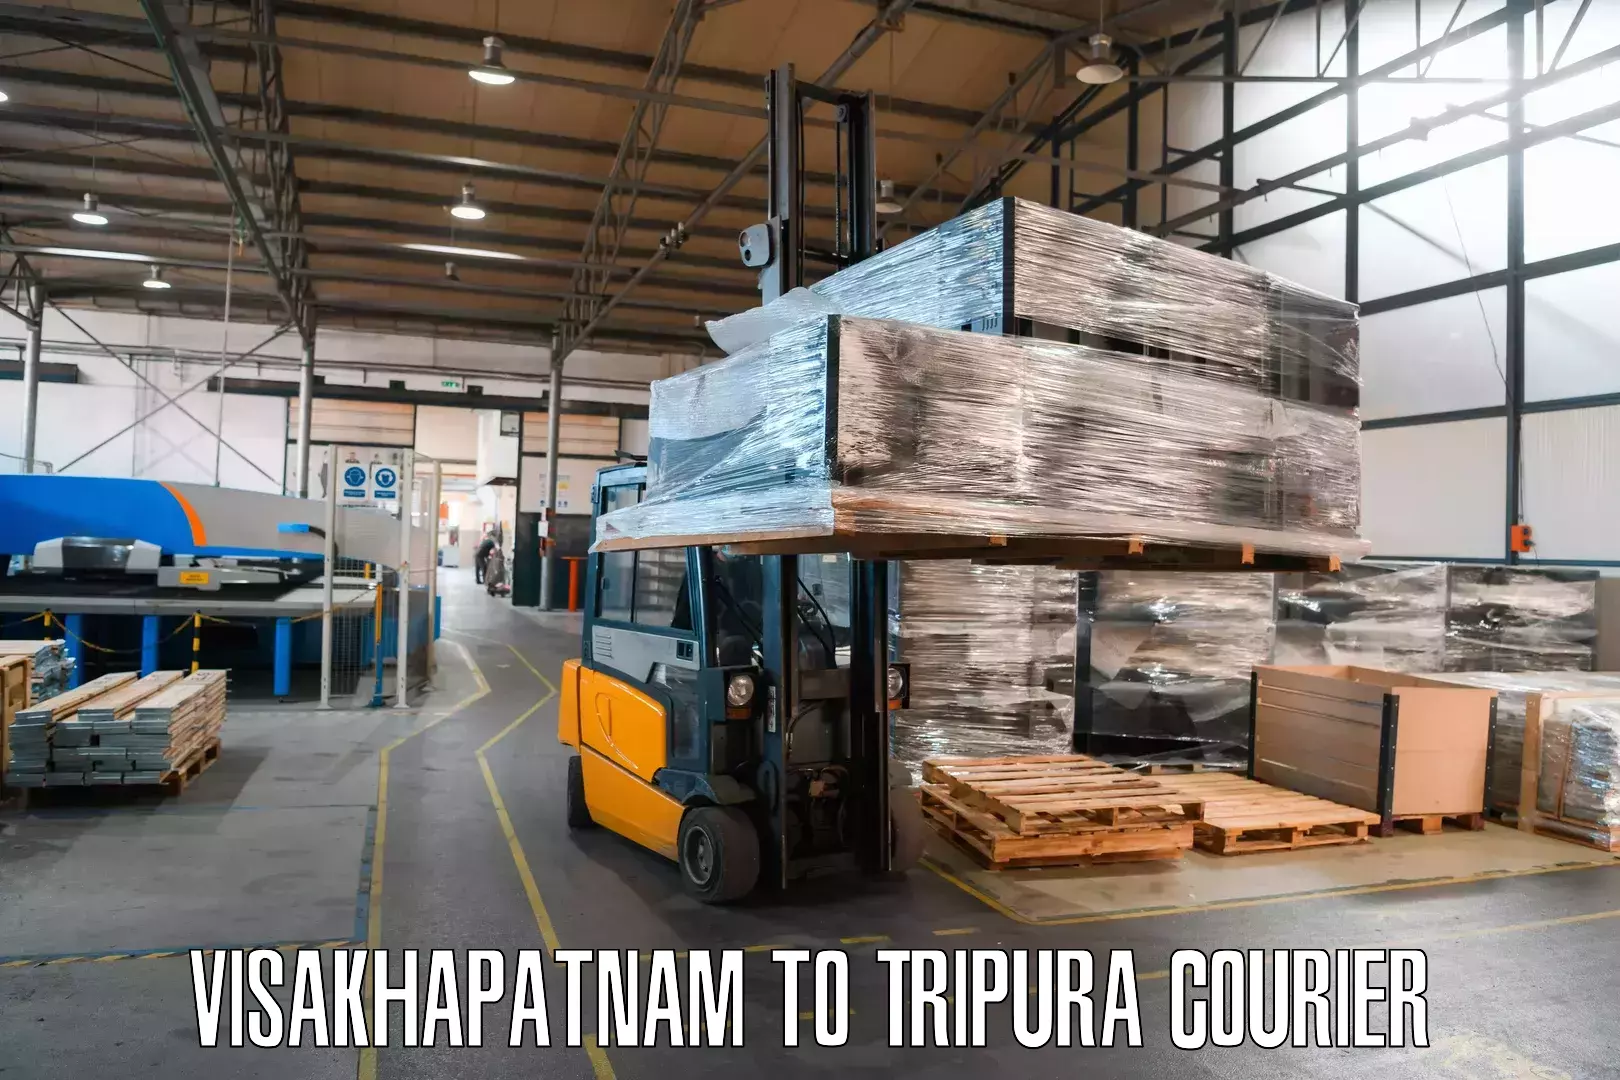 Premium courier solutions Visakhapatnam to Tripura